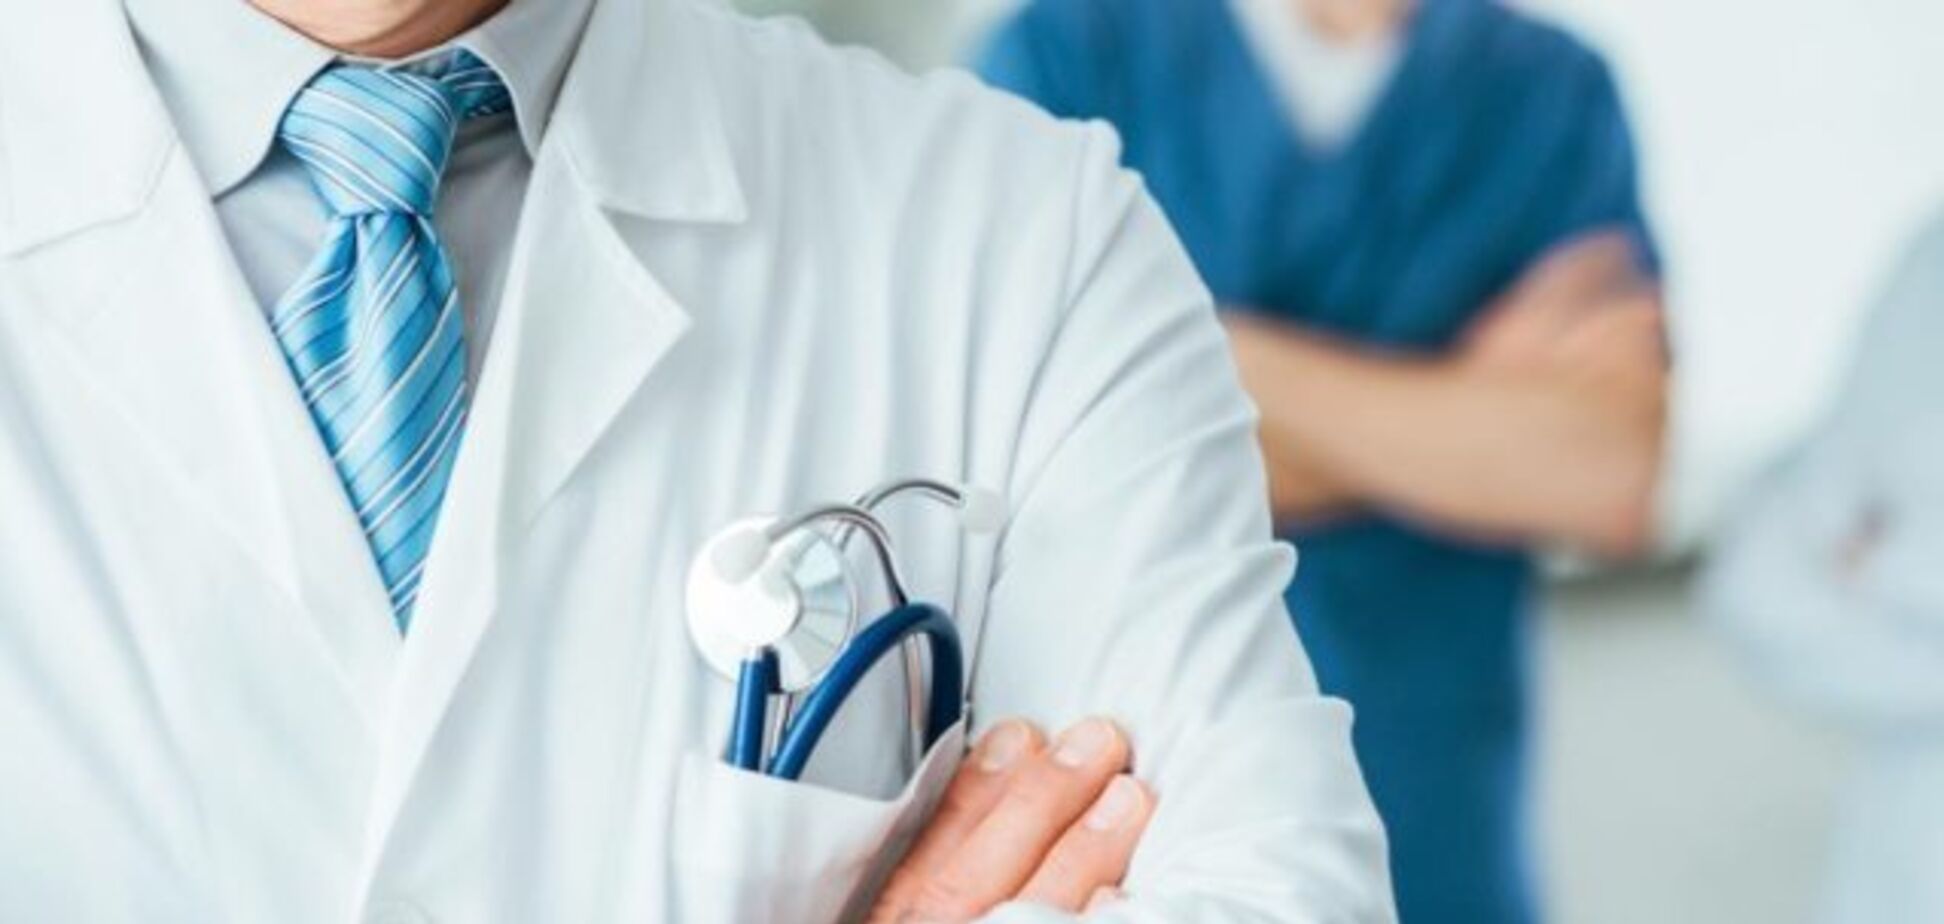 Клініка 'Інто-Сана' заявила про замовний характер 'Справи лікарів' і зажадала неупередженого розслідування